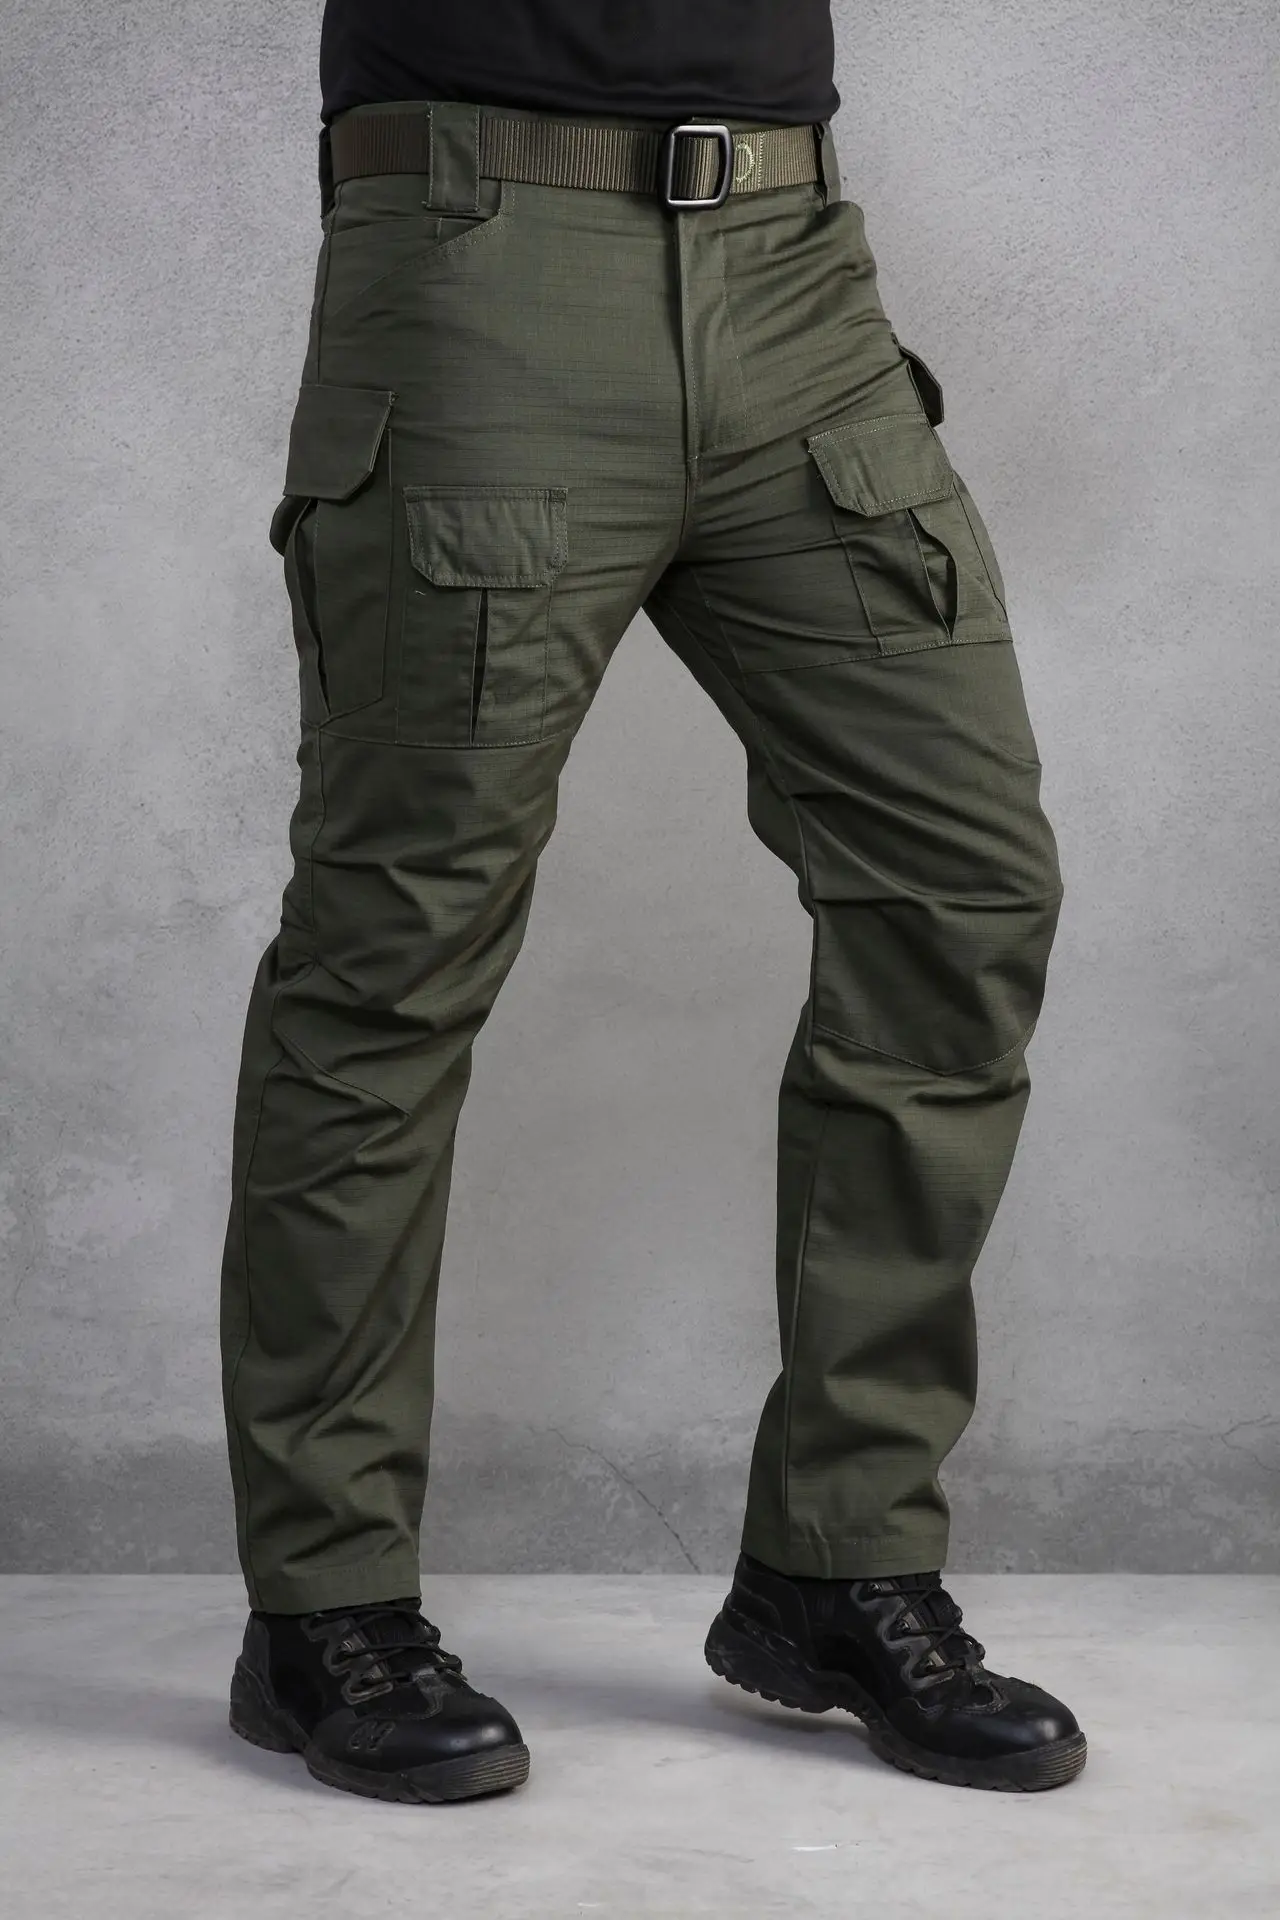 Wolf Enemy военные штаны карго с карманами темно-Камуфляж обычные тактические брюки Активные мужские брюки - Цвет: Army Green